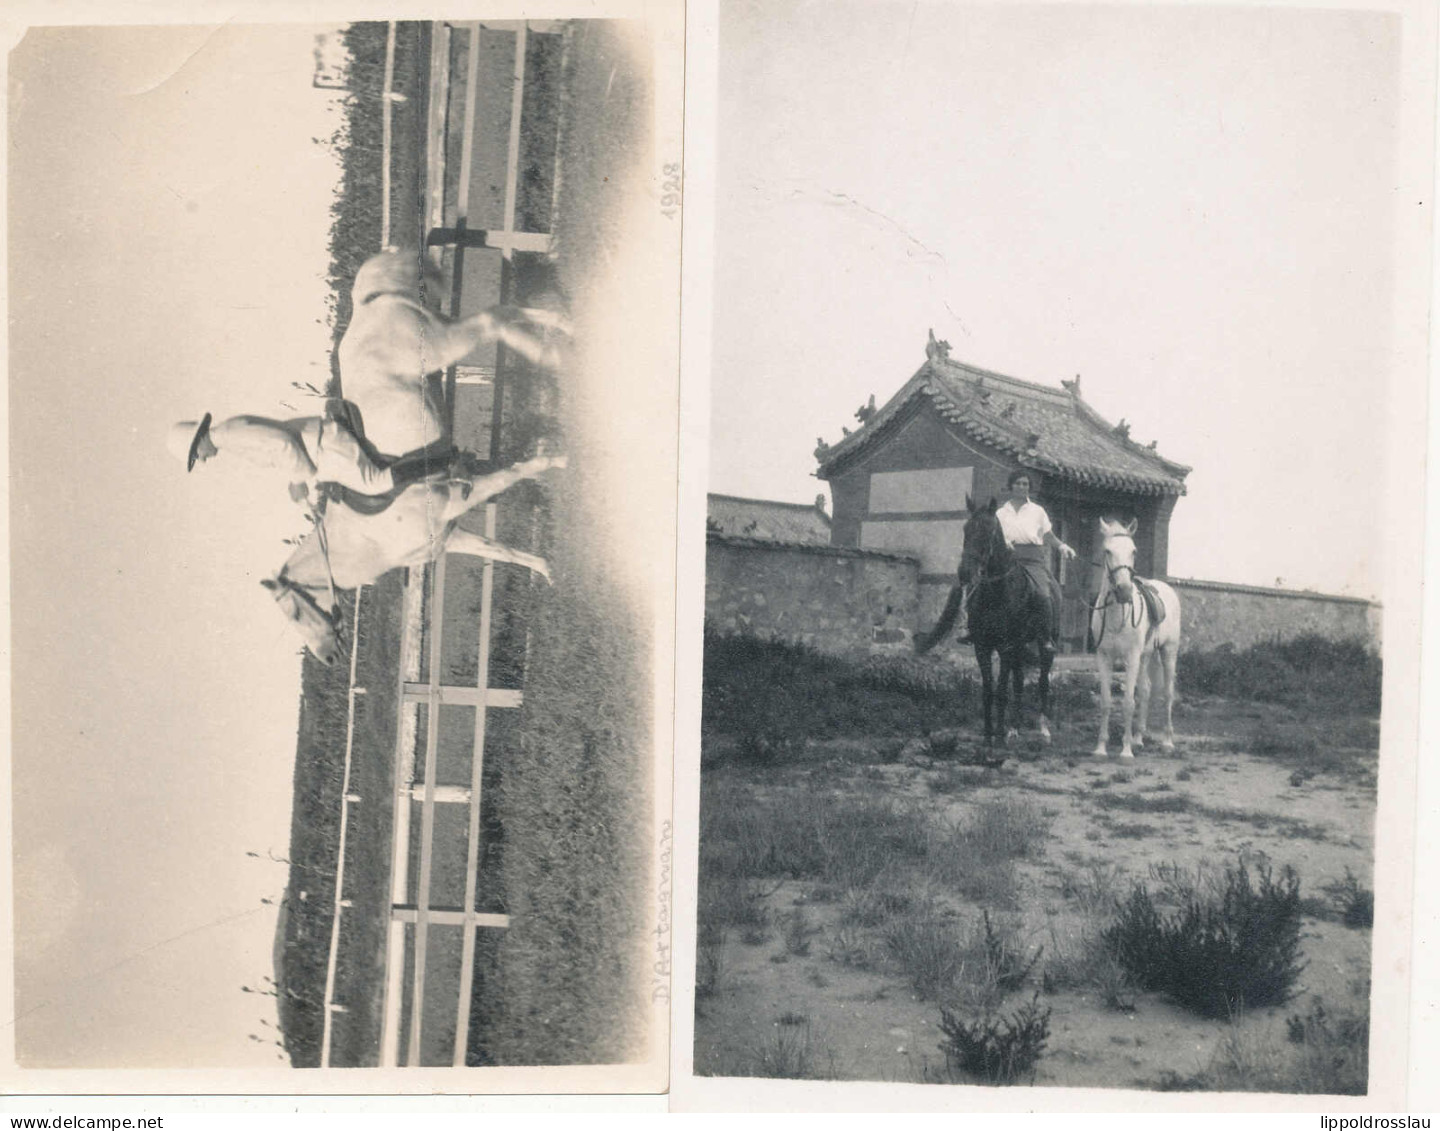 * 41 Stck. Fotos Besuch In Tientsin 1938, Viele Fotos Bei Der Arbeit Mit Pferden, Gehaltvoller Posten! - Unclassified